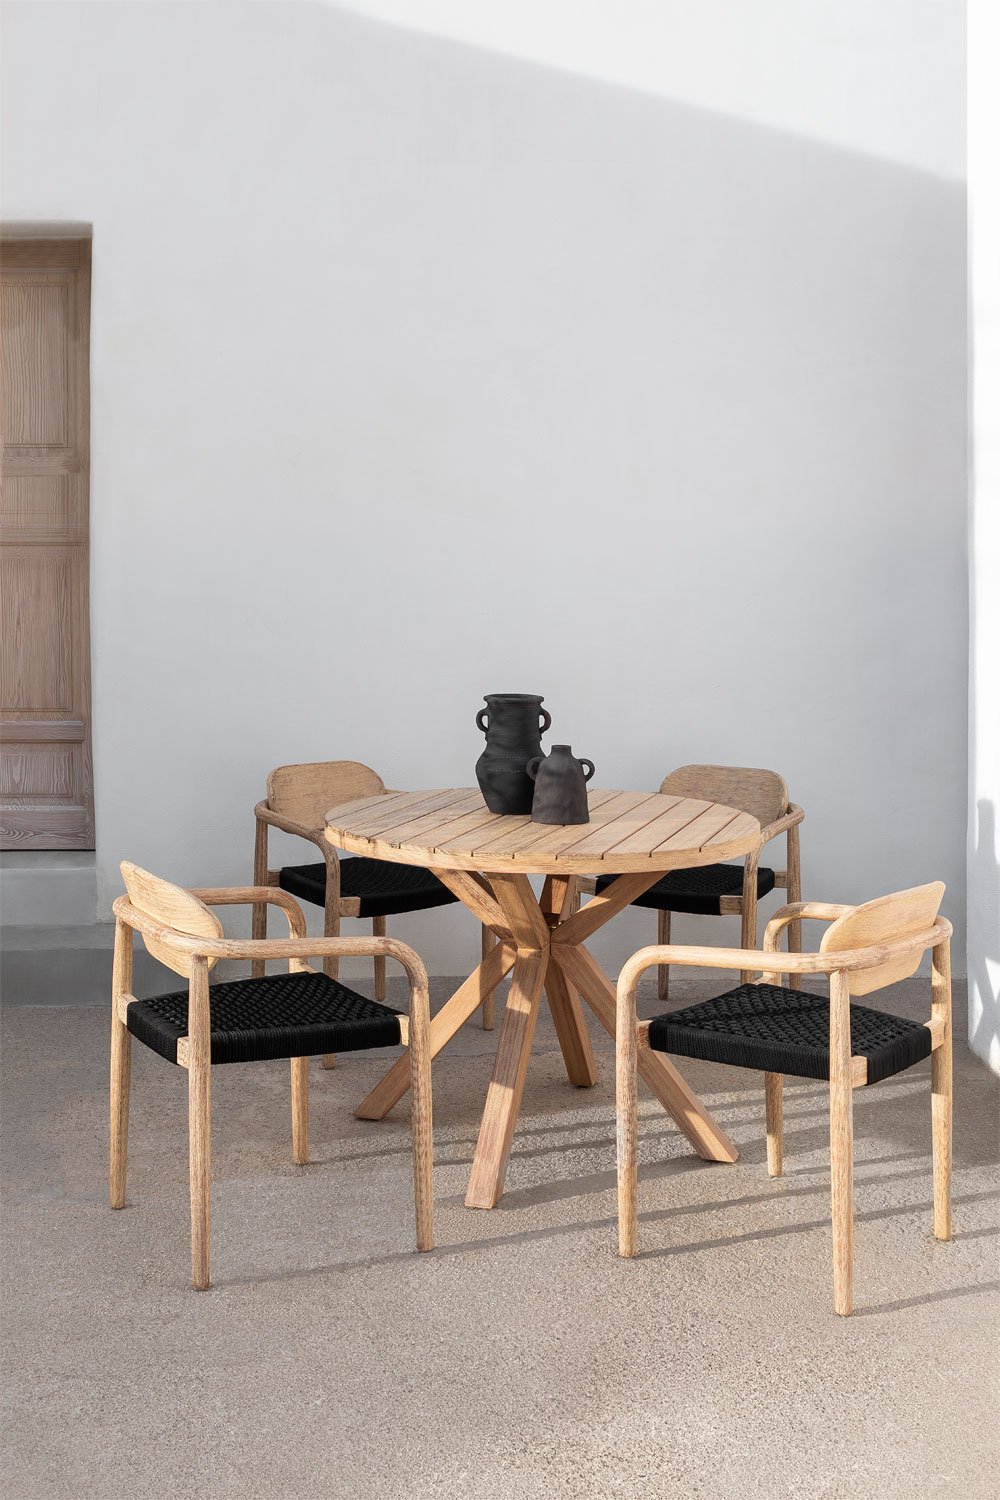 Set van ronde tafel (Ø100 cm) en 4 tuinstoelen met armleuningen in hout Naele , galerij beeld 1